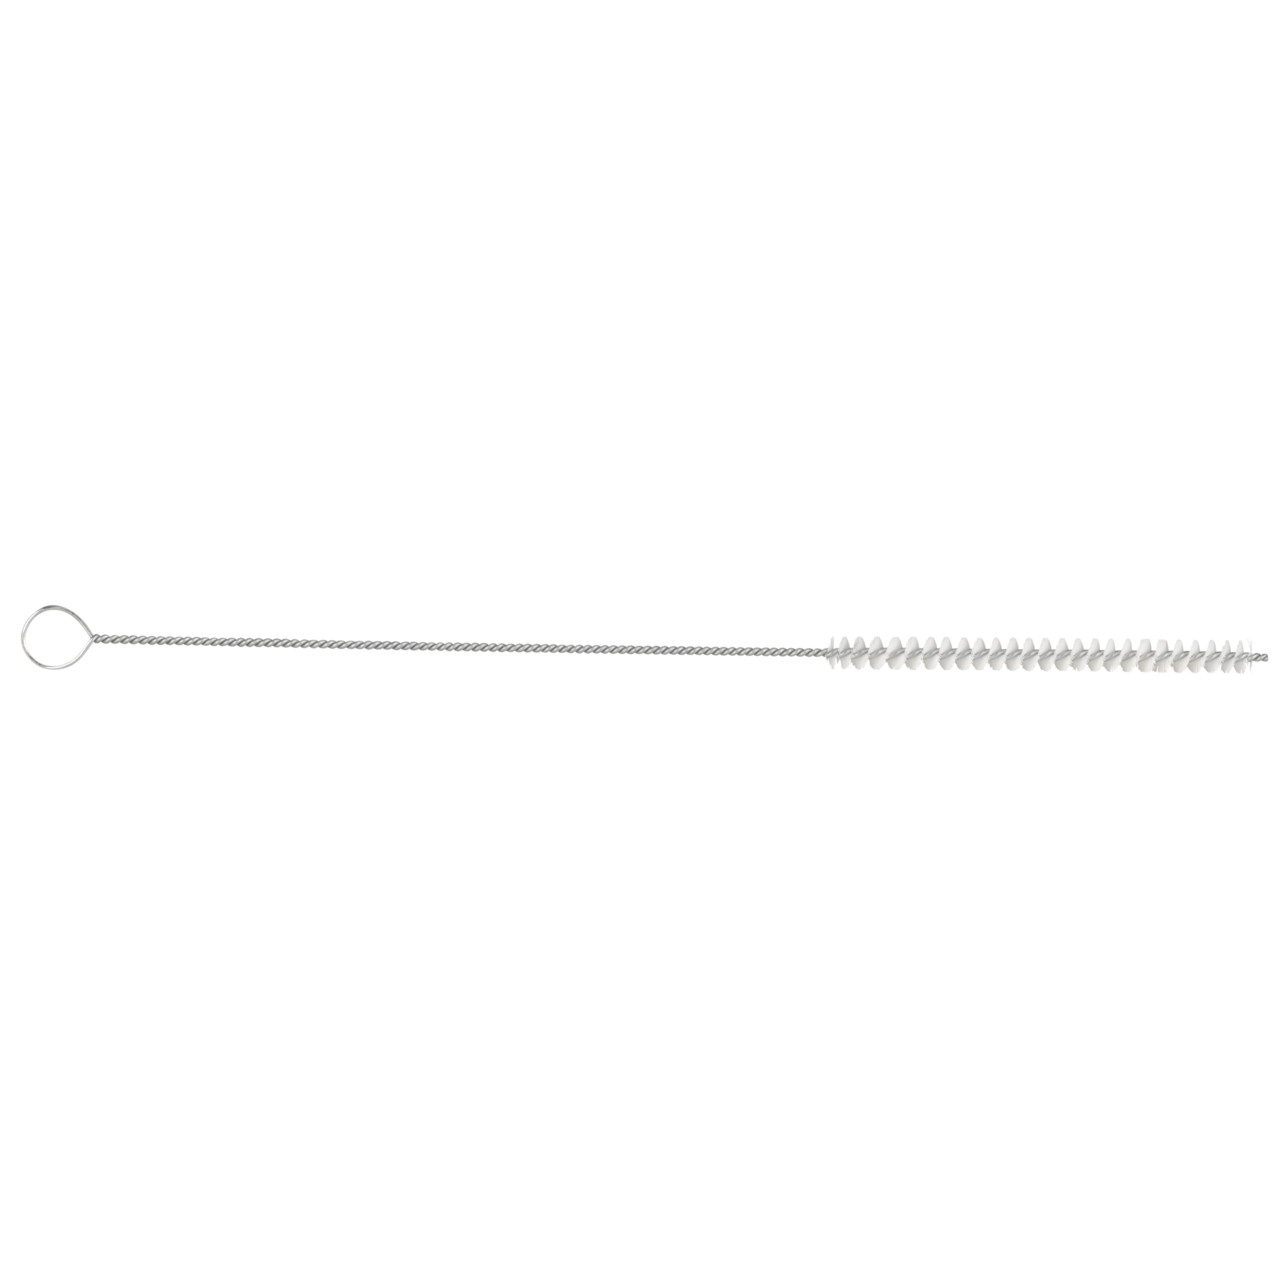 TYROLIT cepillo cilíndrico para tubos D-I 8-300 Para uso universal, forma: 18ROODG - (cepillo cilíndrico para tubos), Art. 34203571